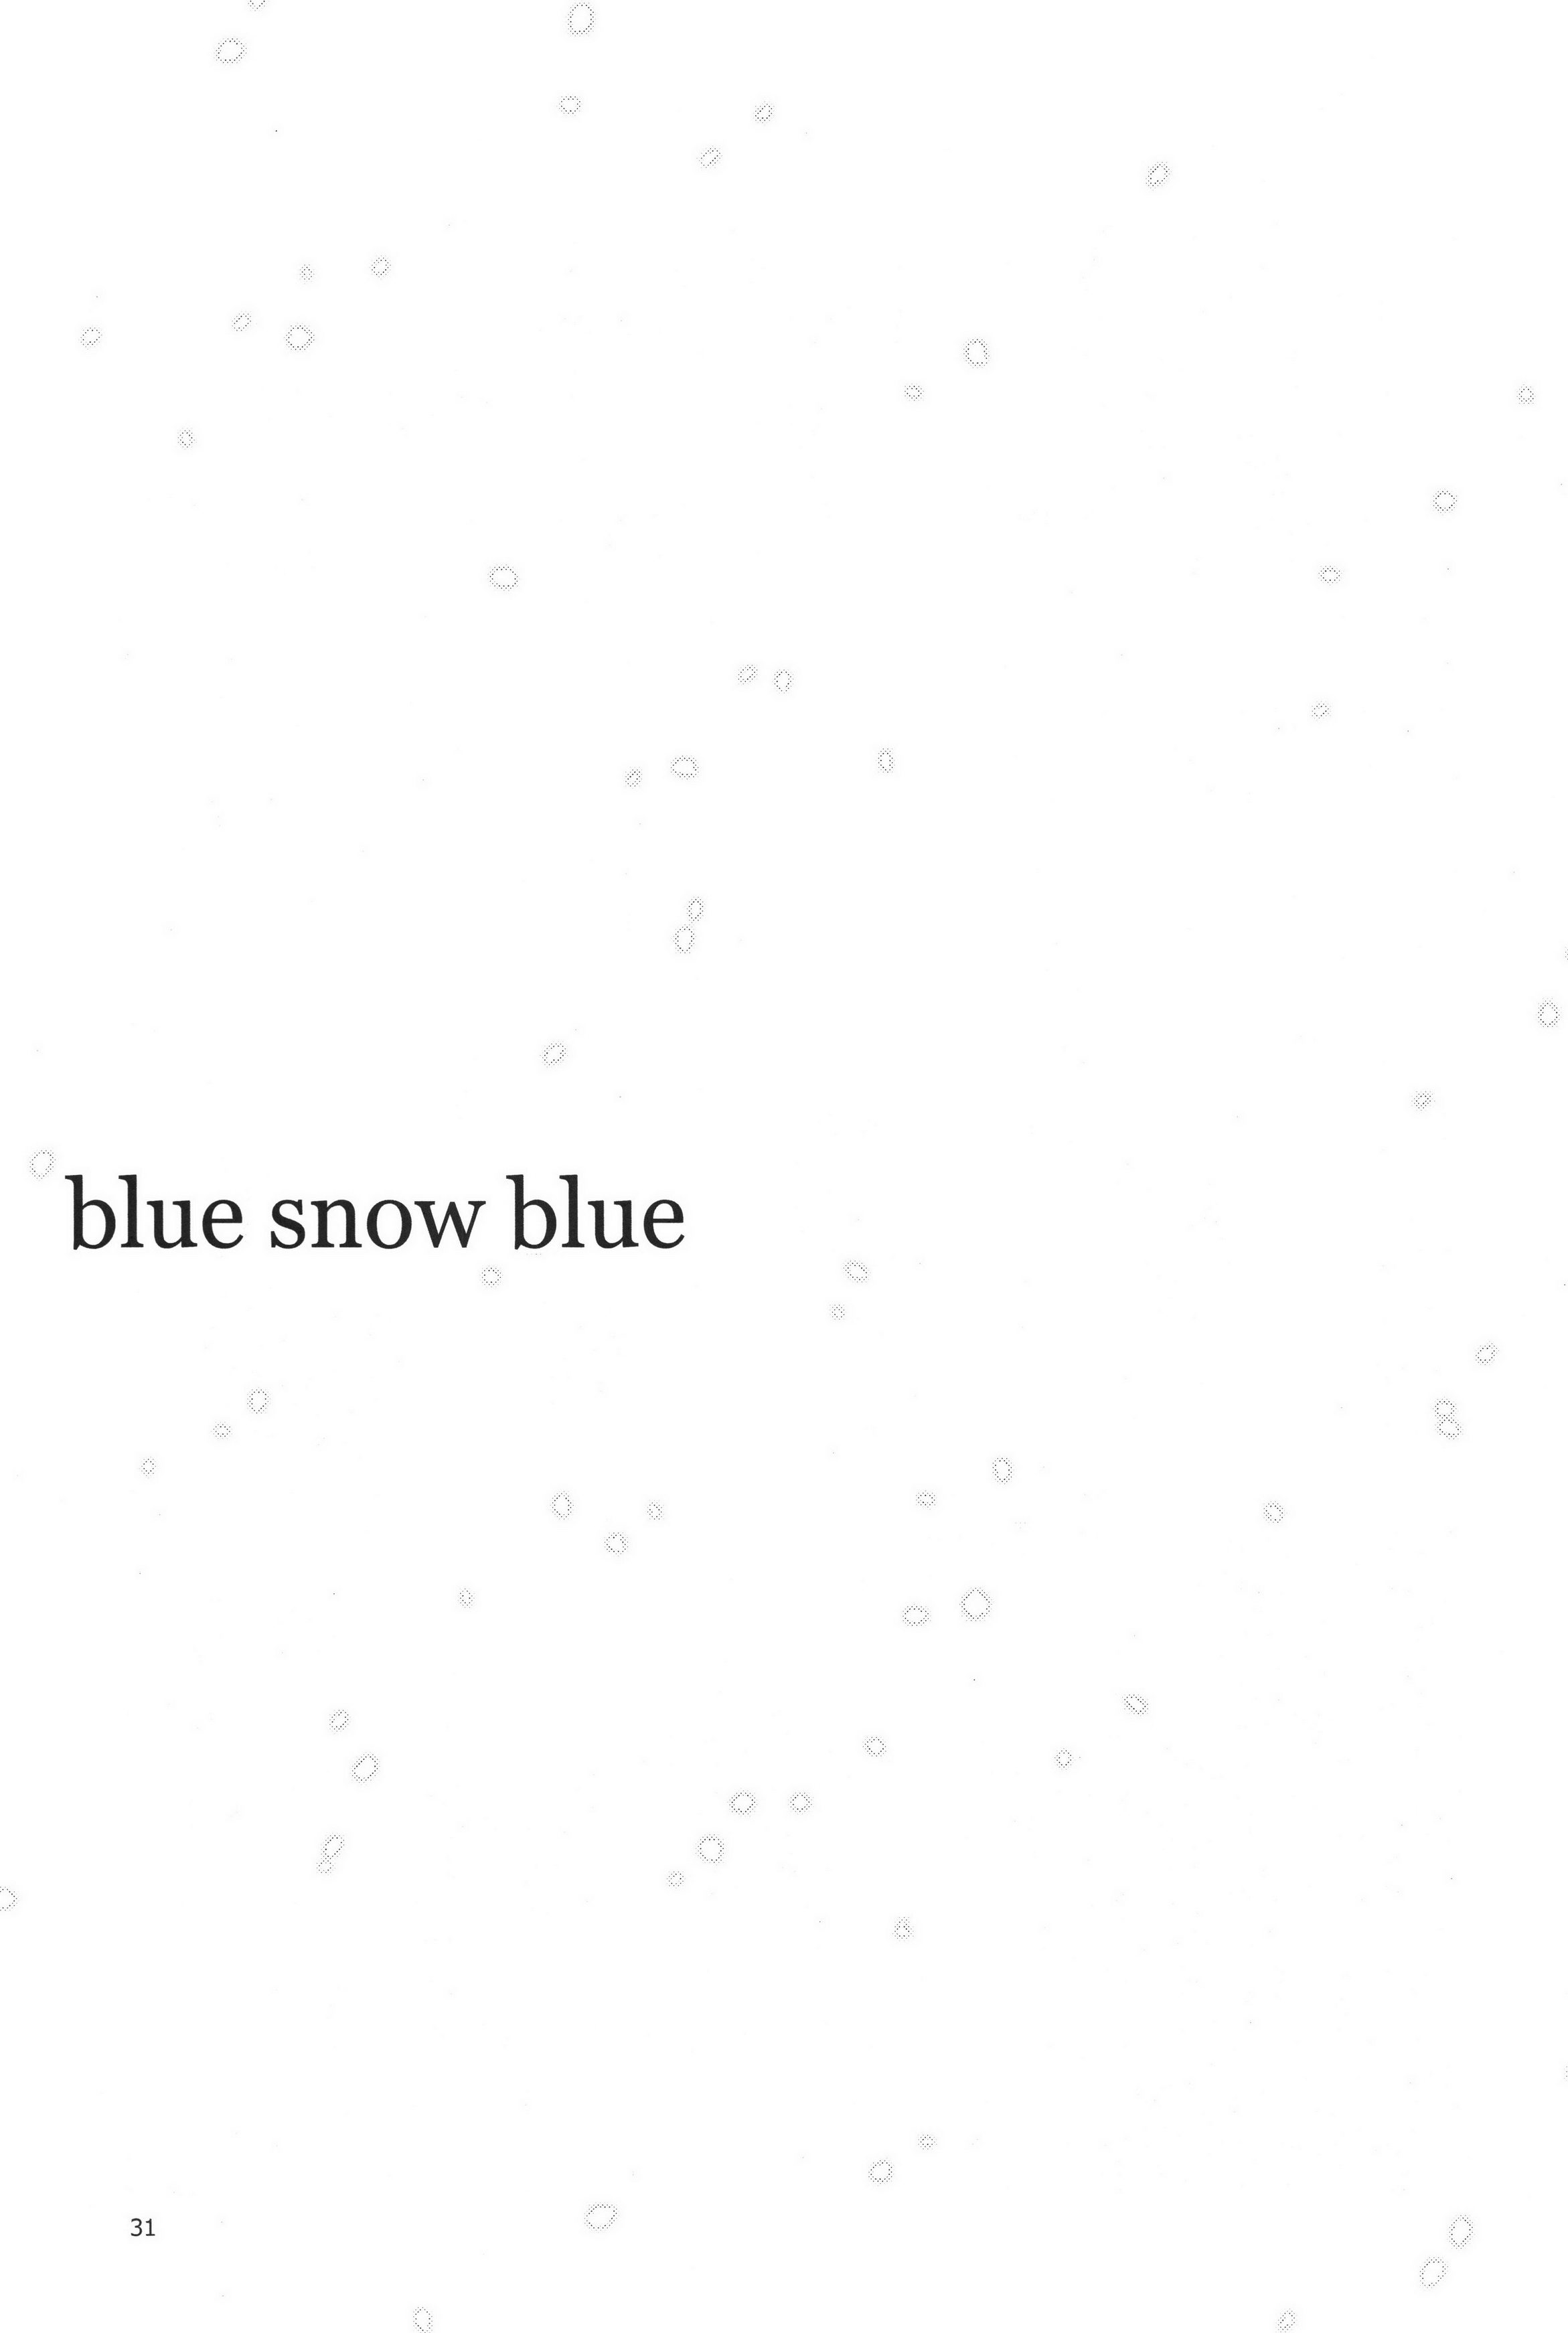 青い雪の青いシーン。19